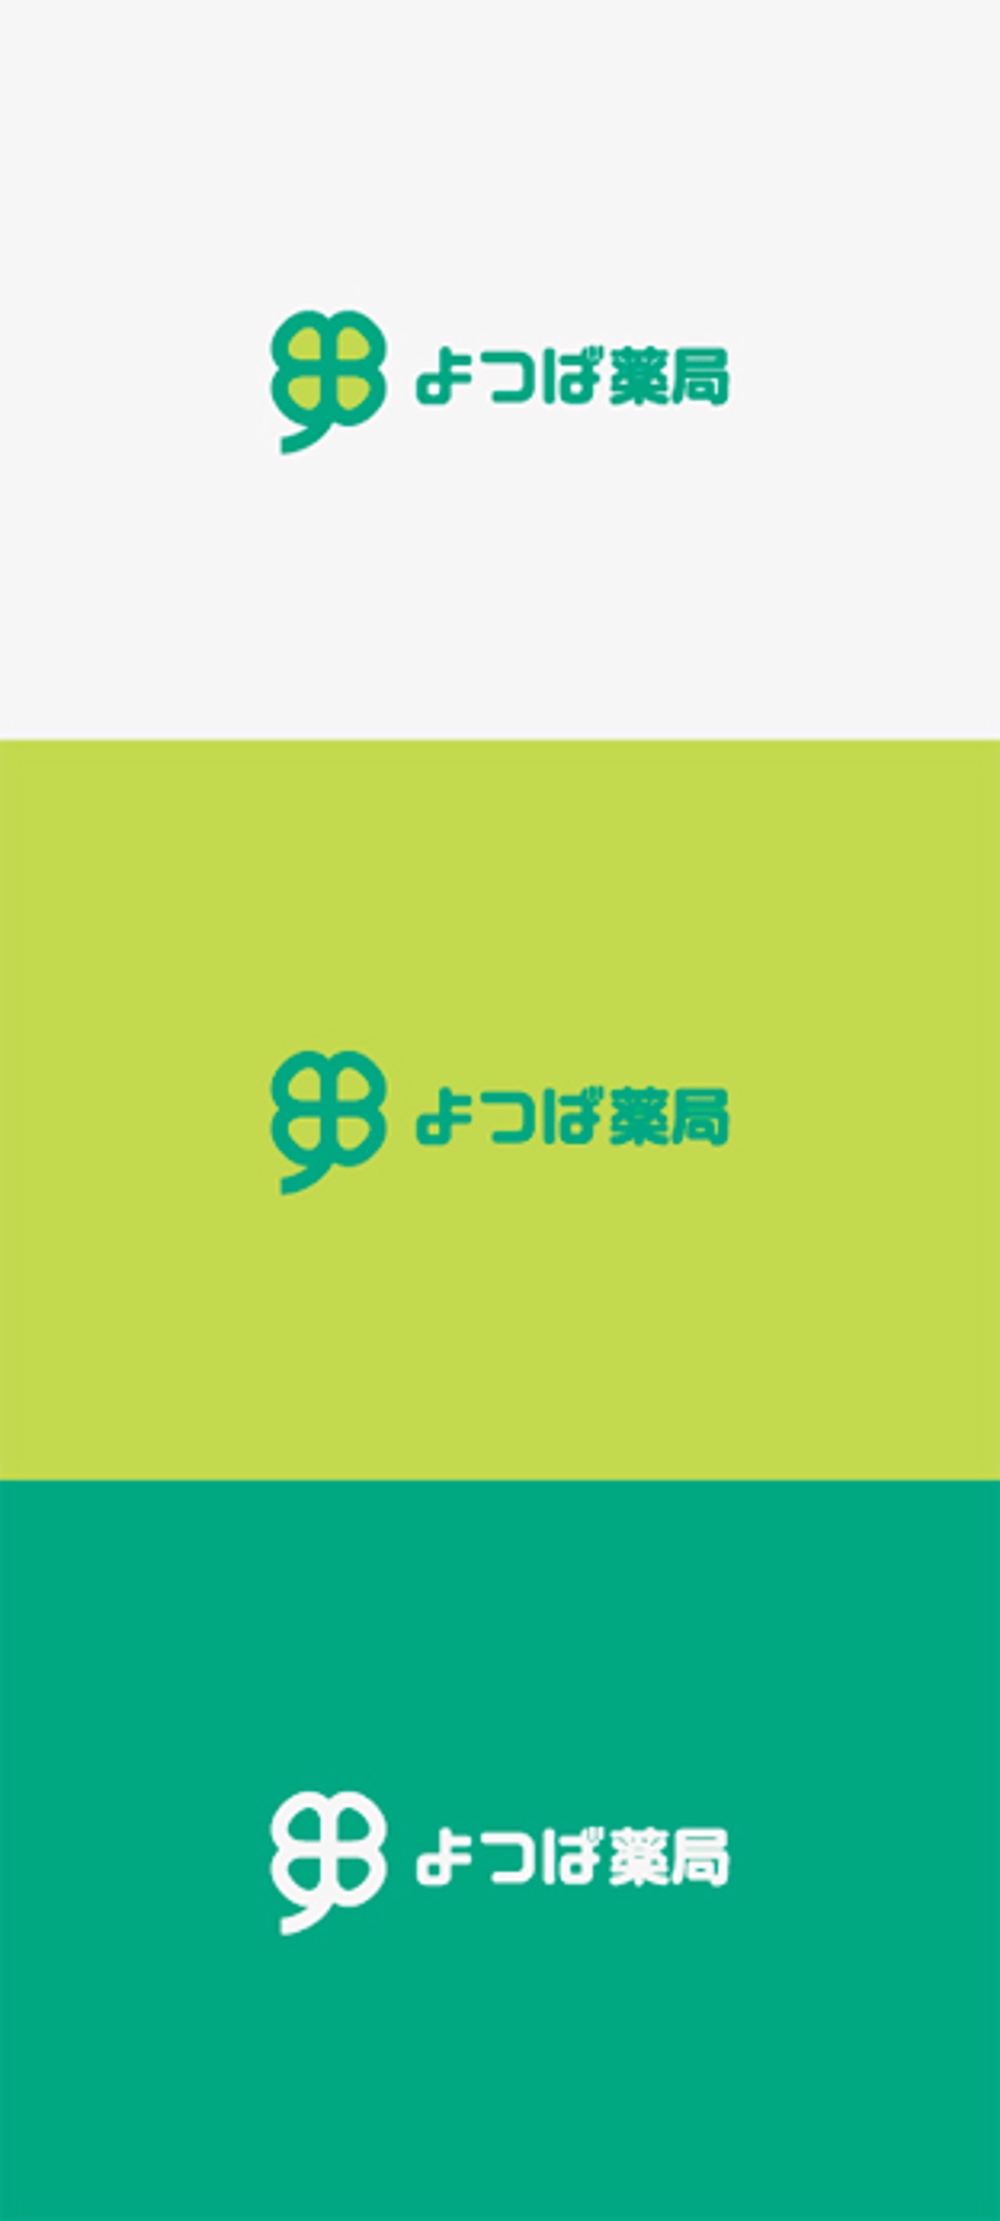 保険調剤薬局「よつば薬局」のロゴ